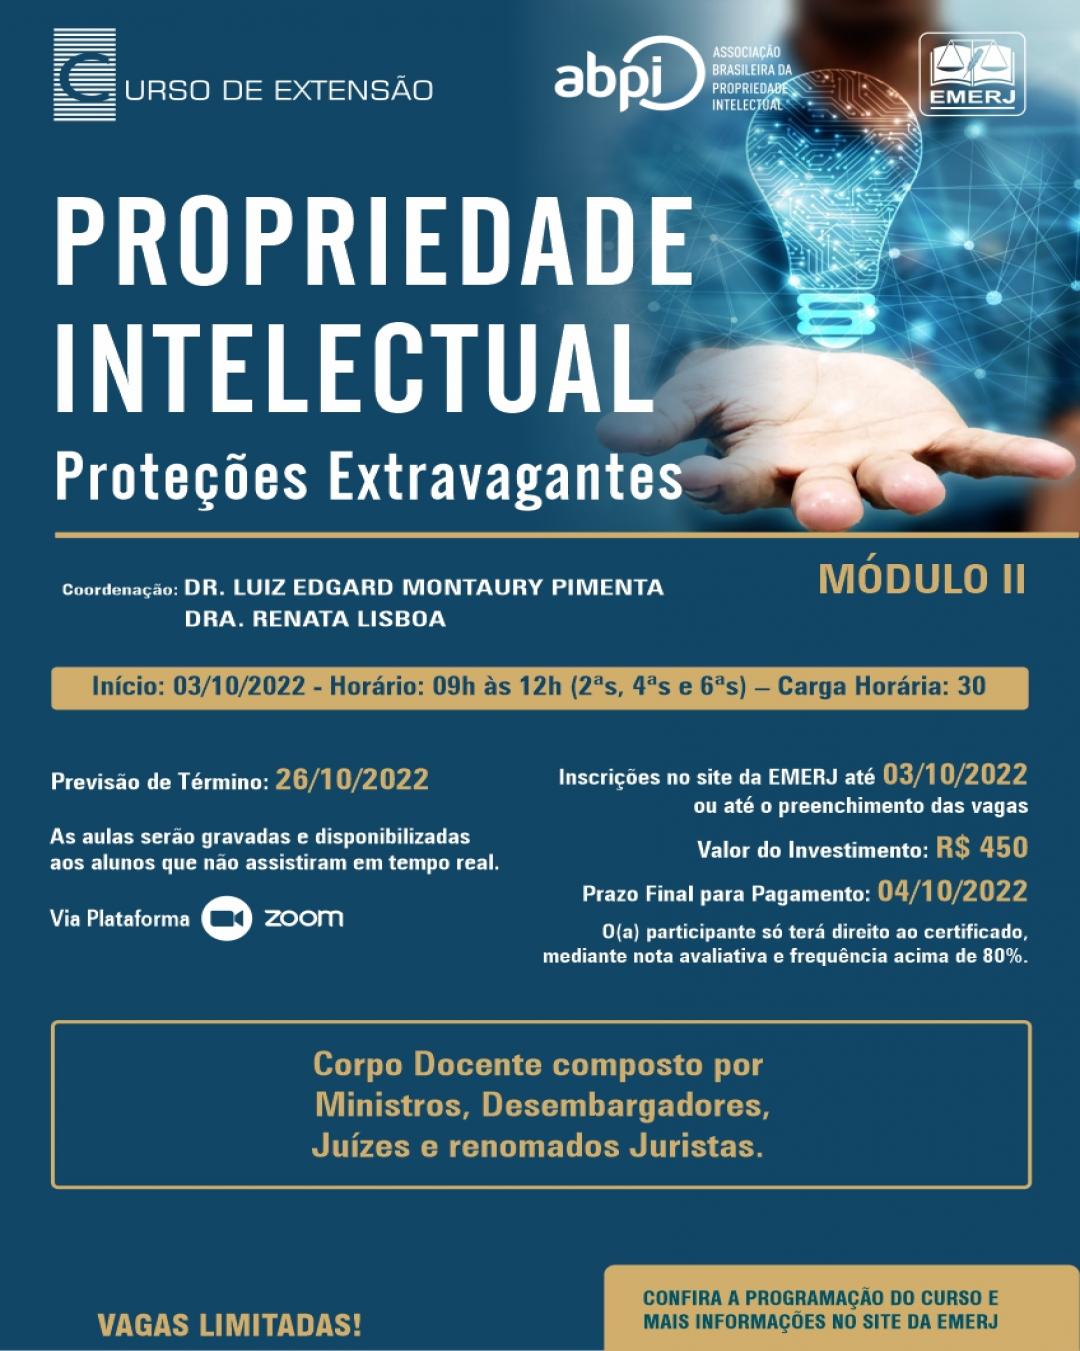 Imagem do banner principal do curso - PROPRIEDADE INTELECTUAL – MÓDULO II